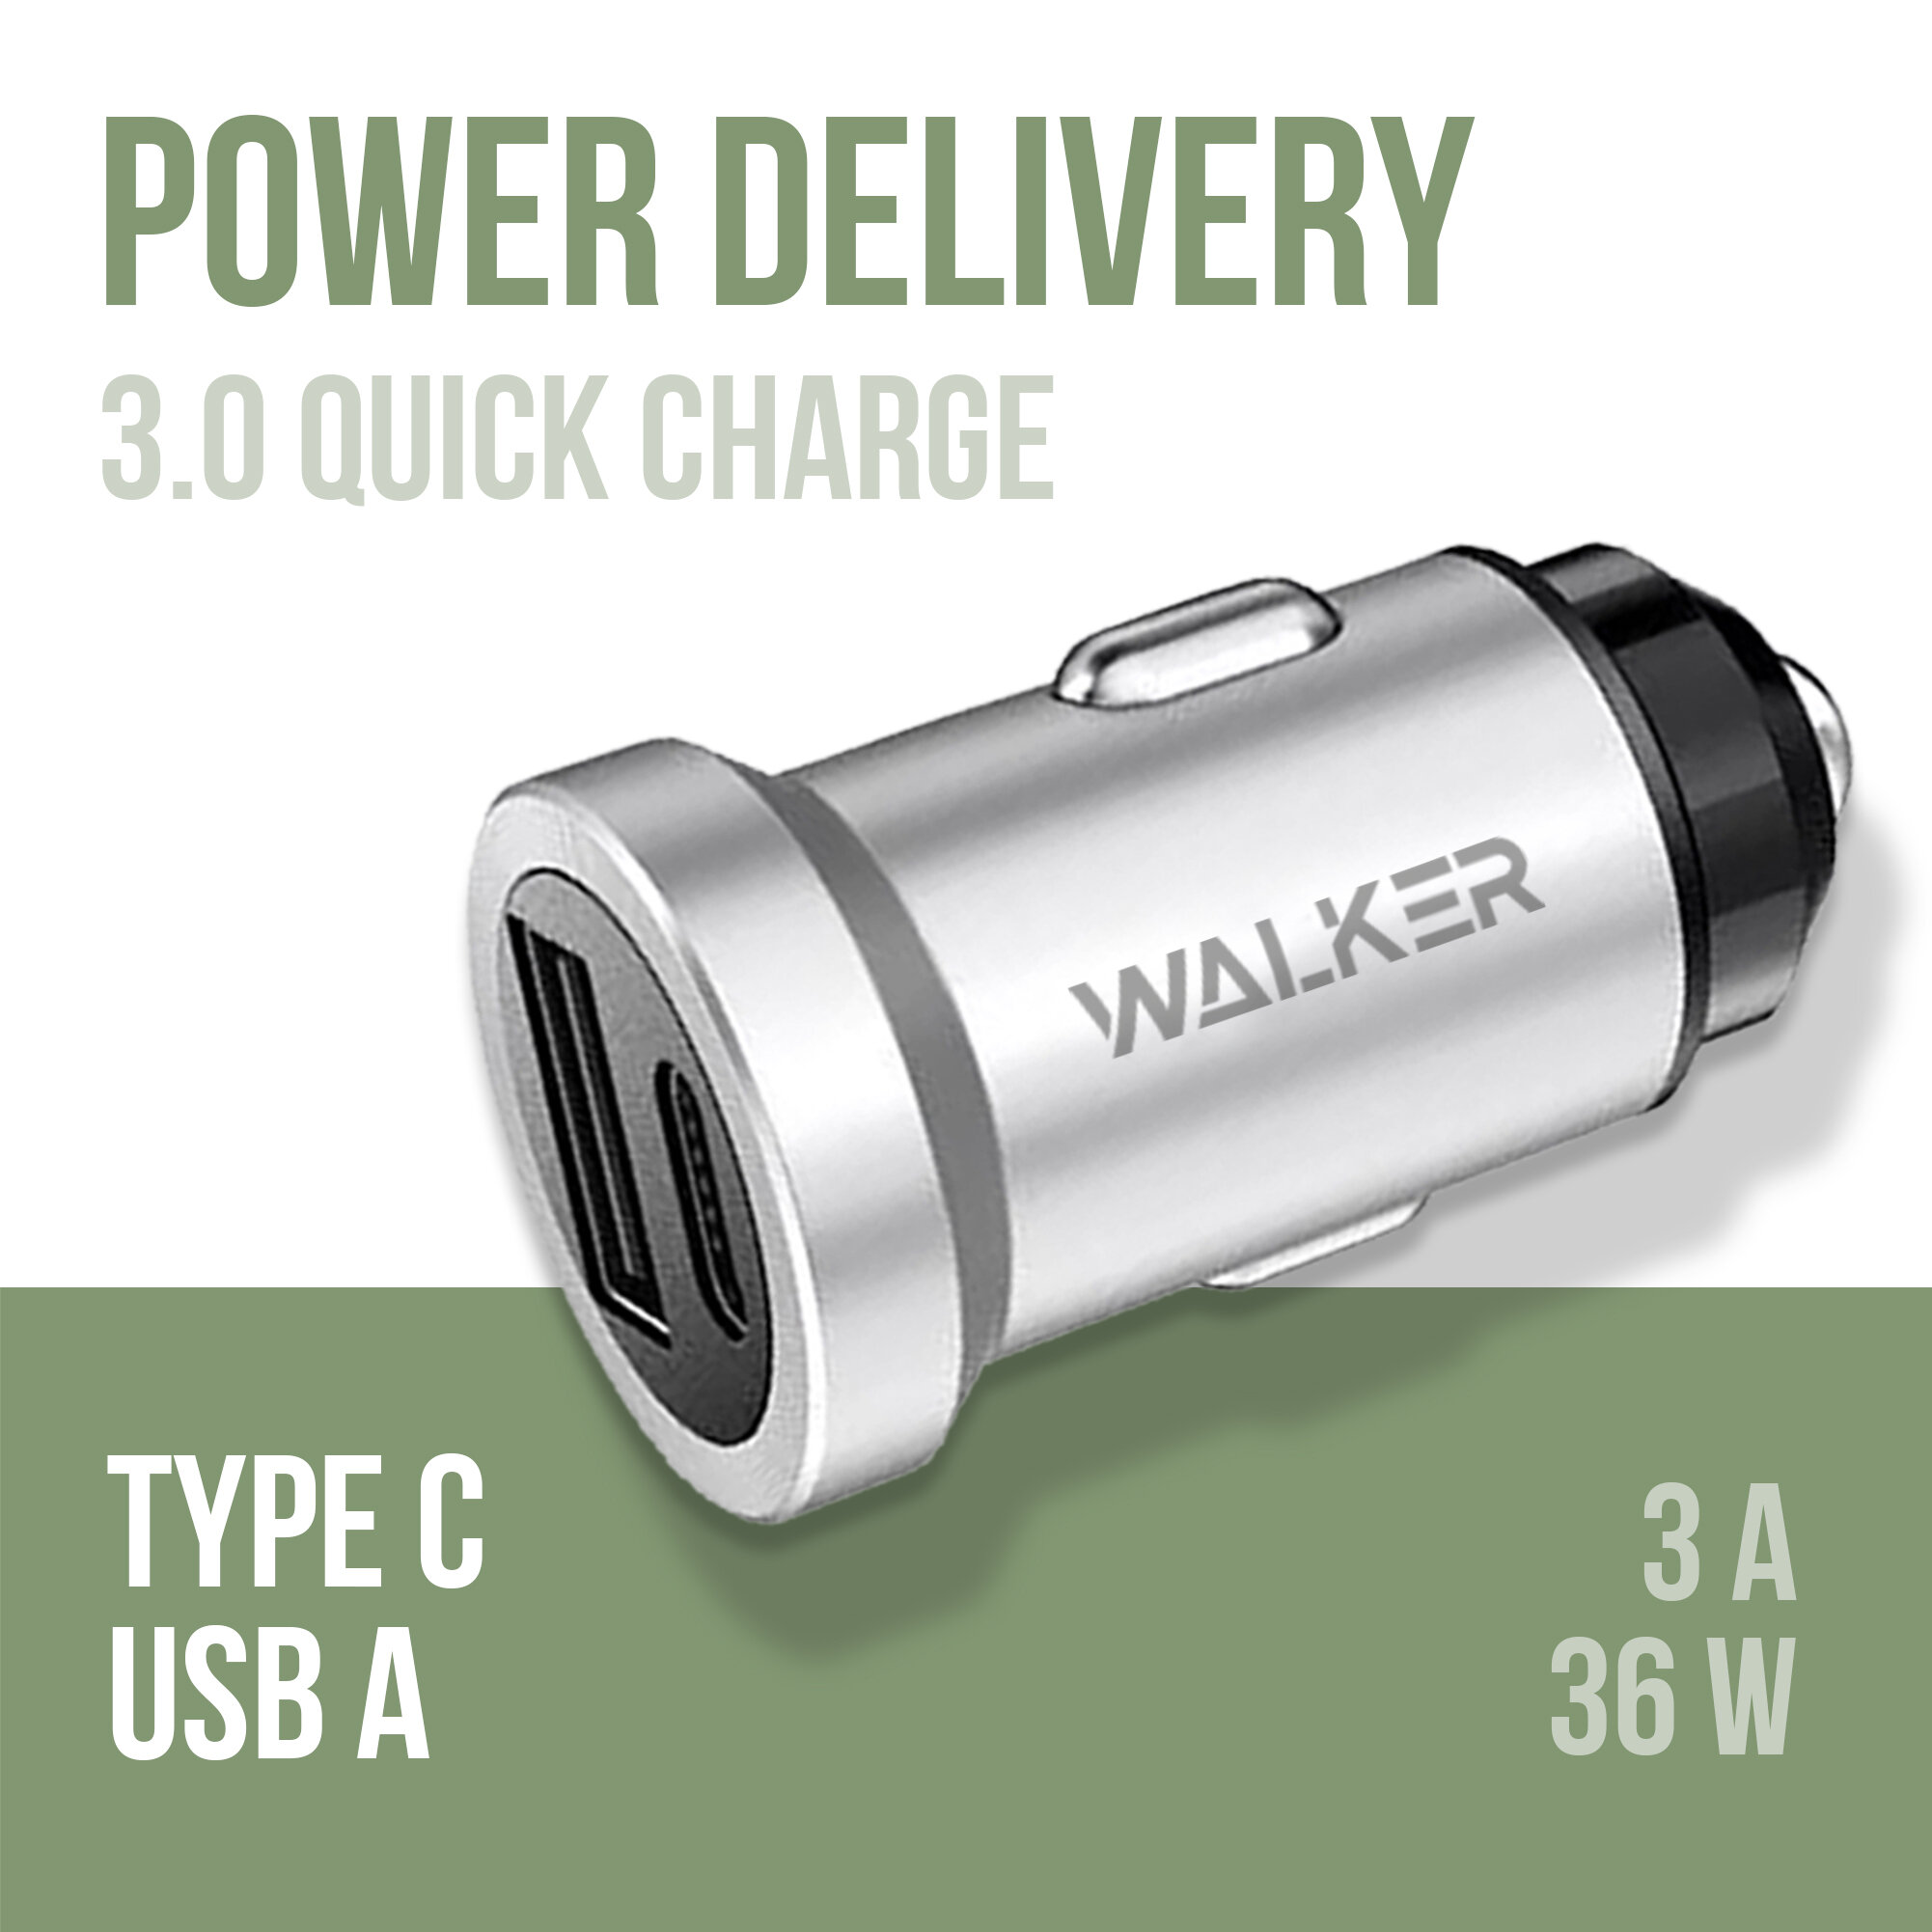 Автомобильная зарядка для телефона, WALKER, WCR-25, с быстрым зарядом, USB+TypeC разъемы, 36W, серебряная, автозарядка в машину в прикуриватель